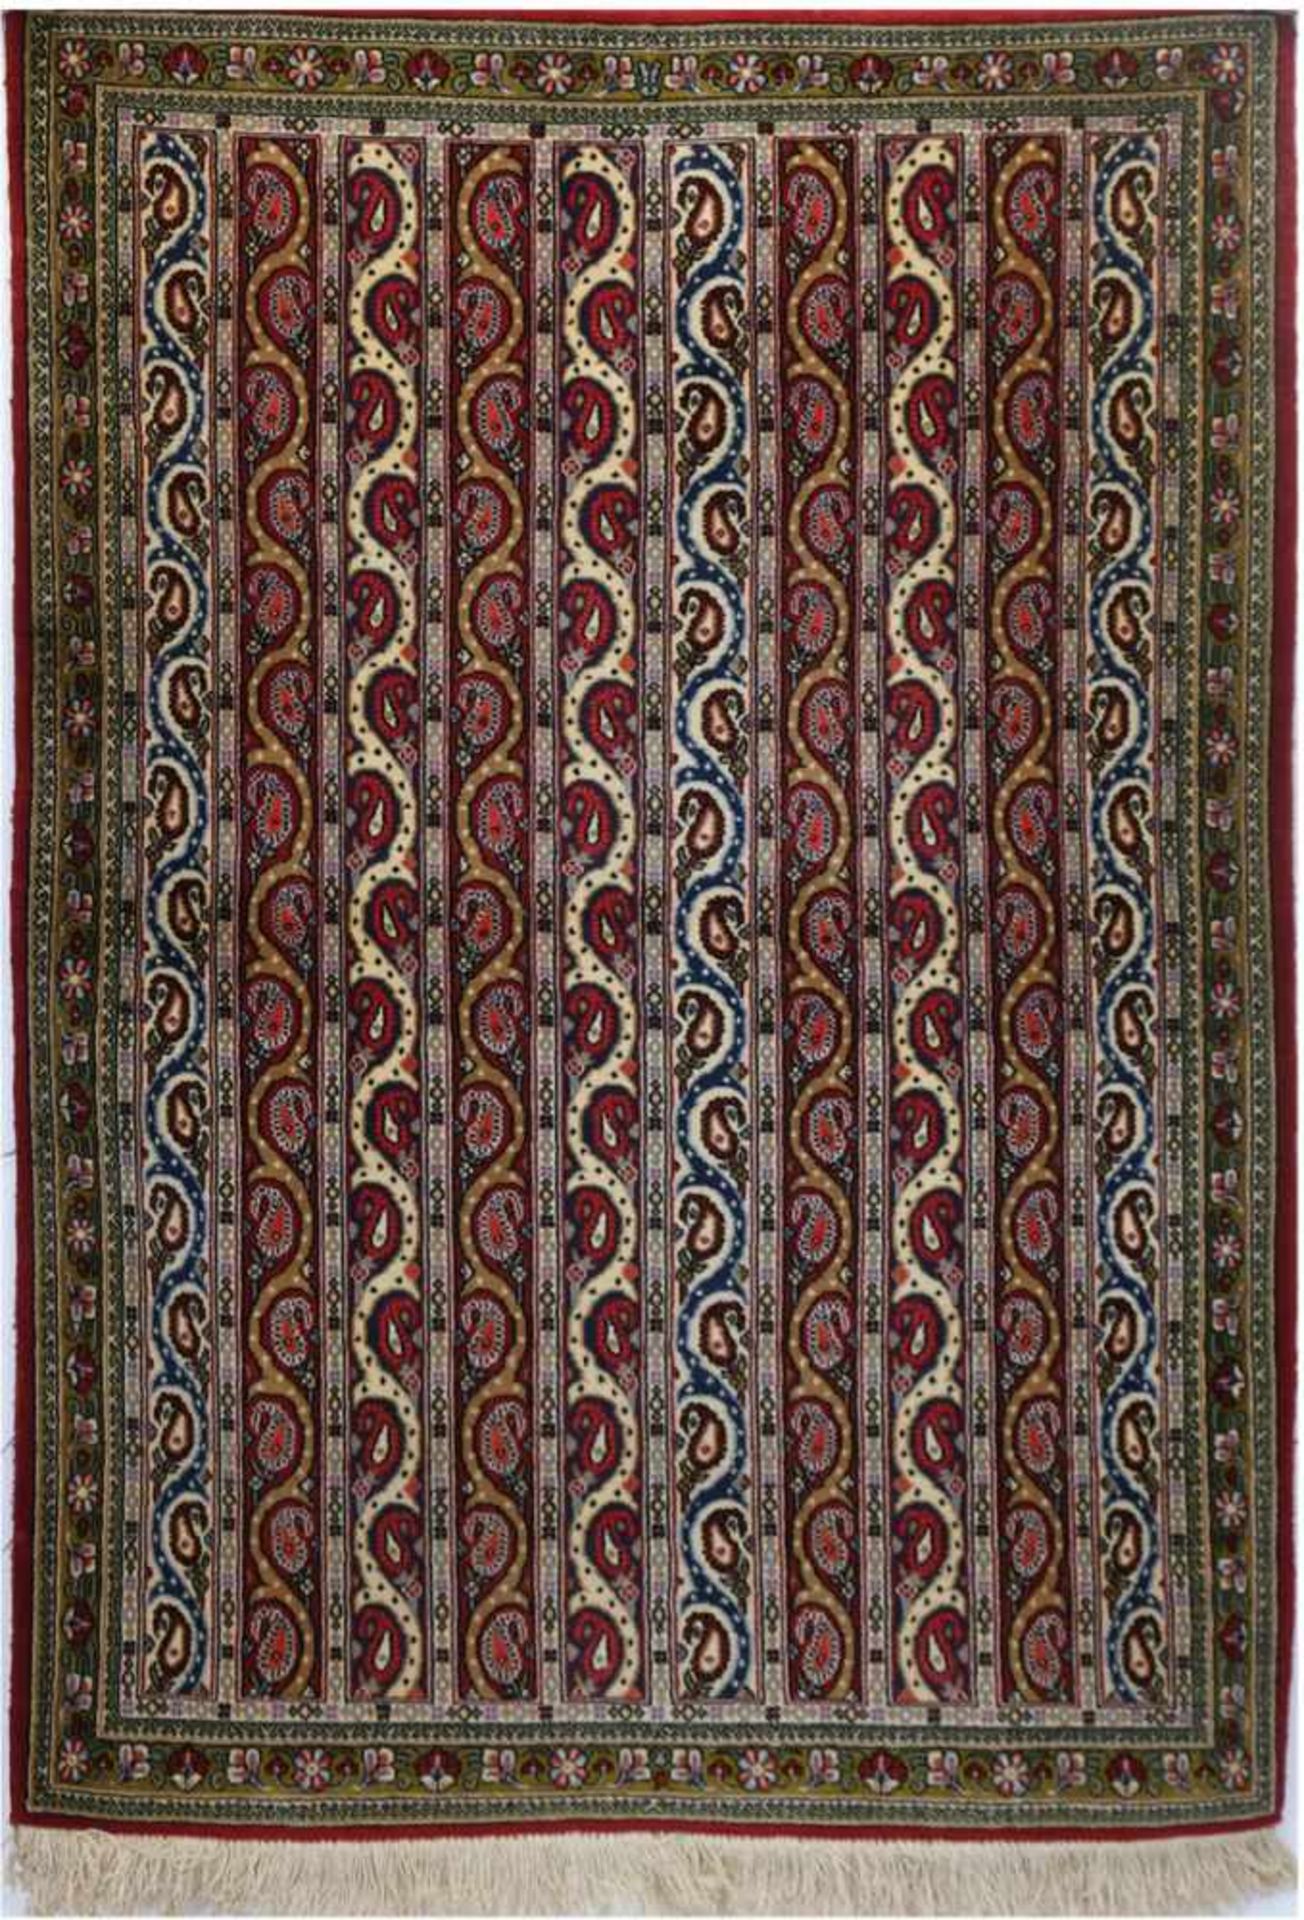 Teppich, mehrfarbig, mit durchgehendem Muster und floralen Motiven, guter Zustand, 155x106cm